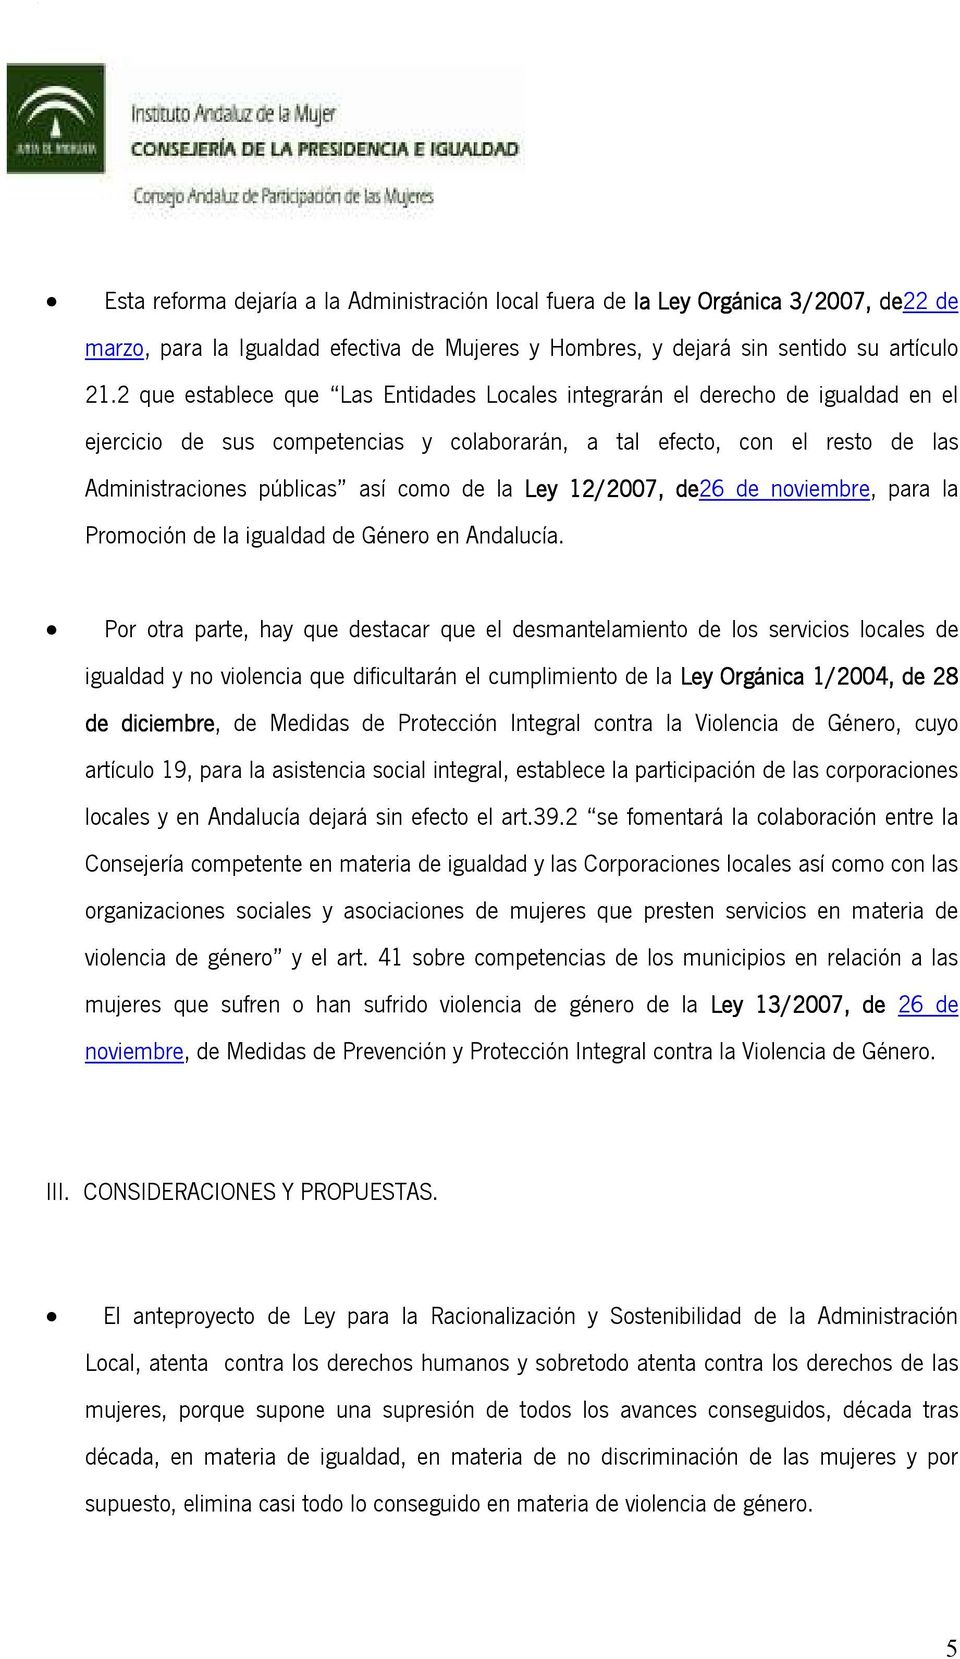 la Ley 12/2007, de26 de noviembre, para la Promoción de la igualdad de Género en Andalucía.